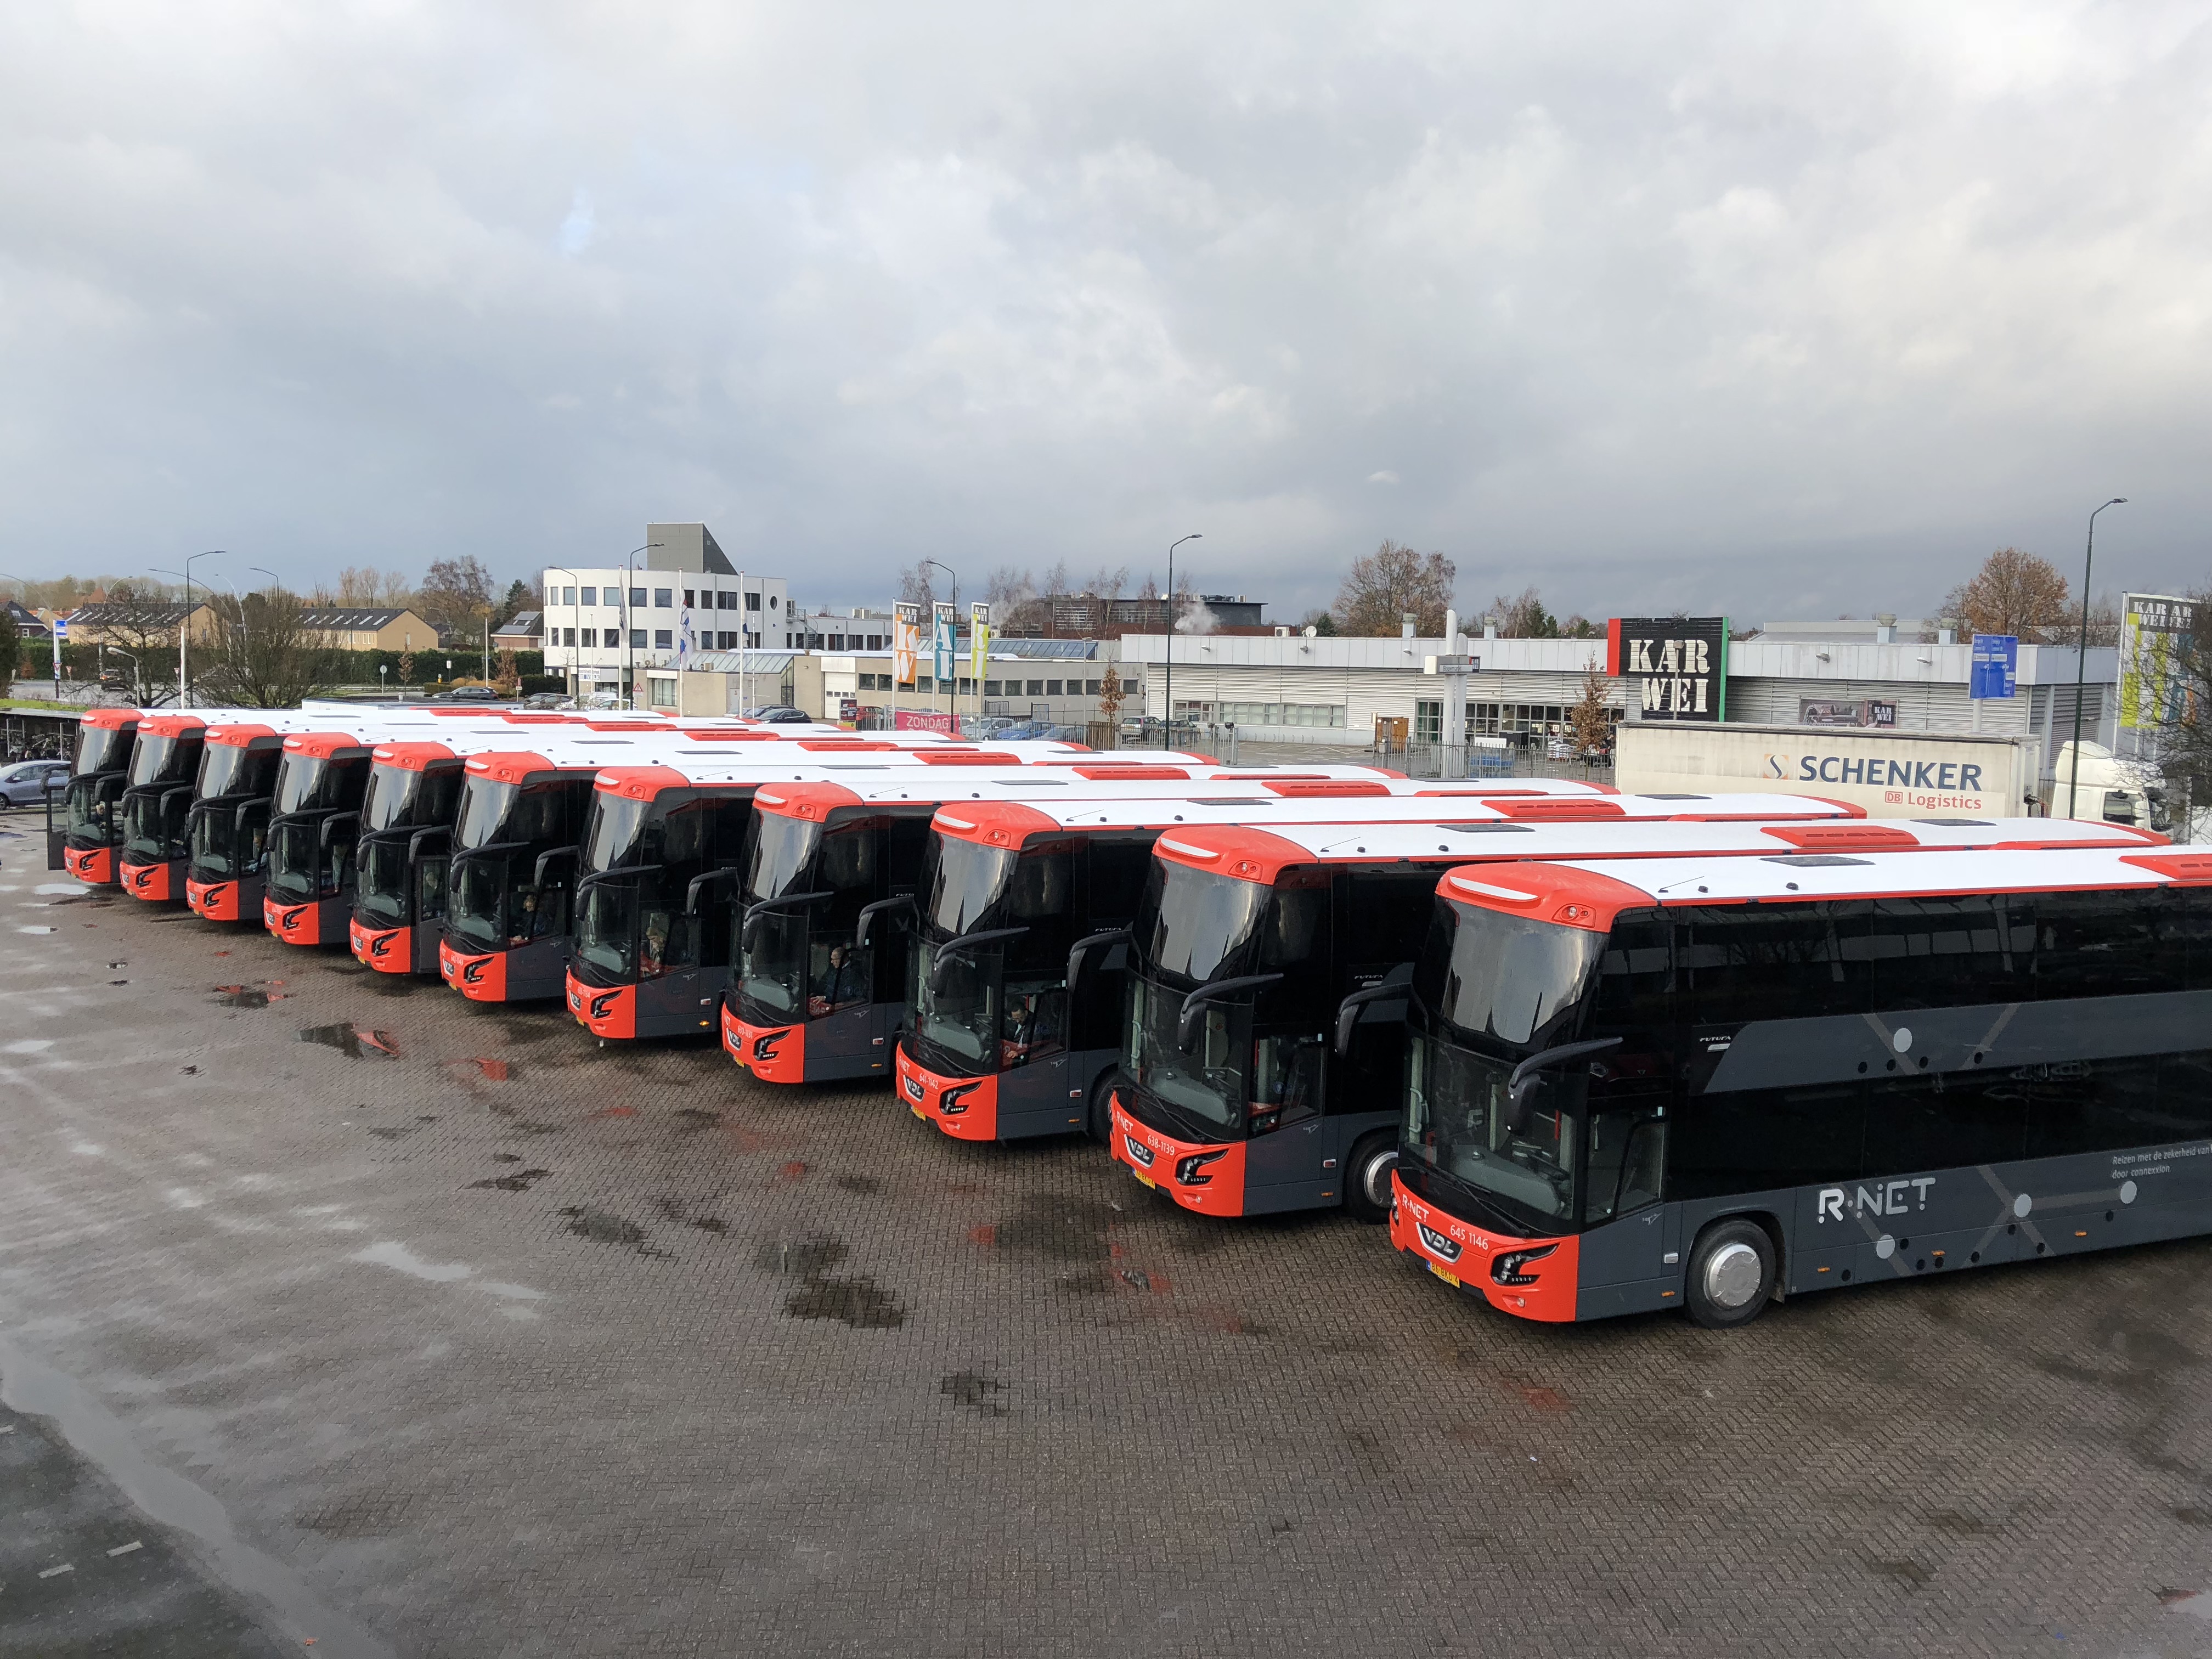 BEEQUIP financiert dubbeldeksbussen voor het openbaar vervoer